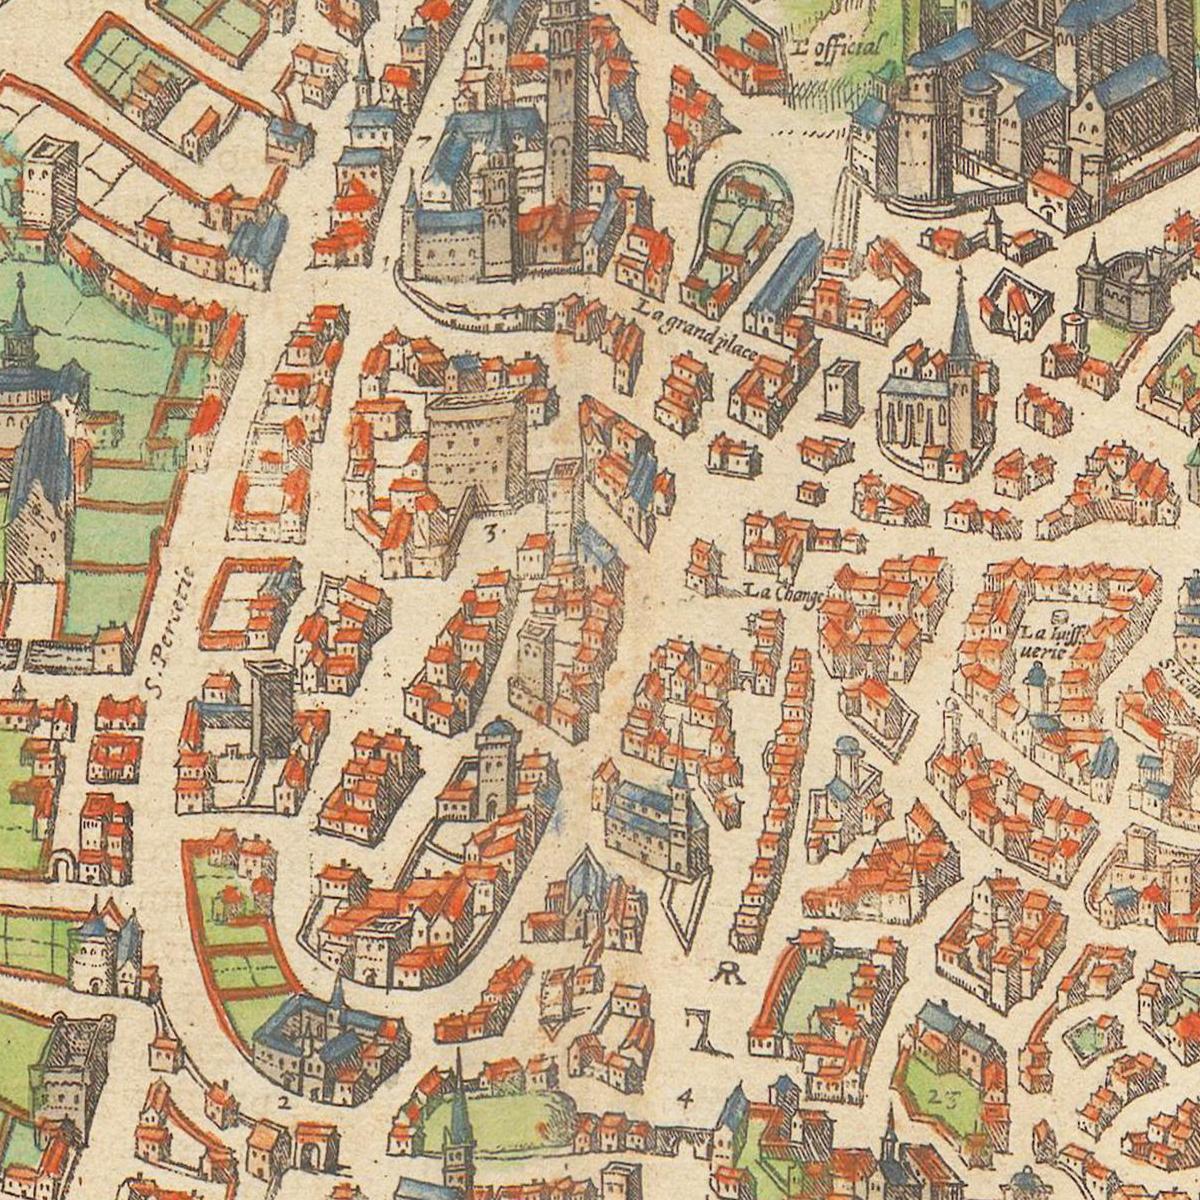 Historische Stadtansicht Avignon um 1609